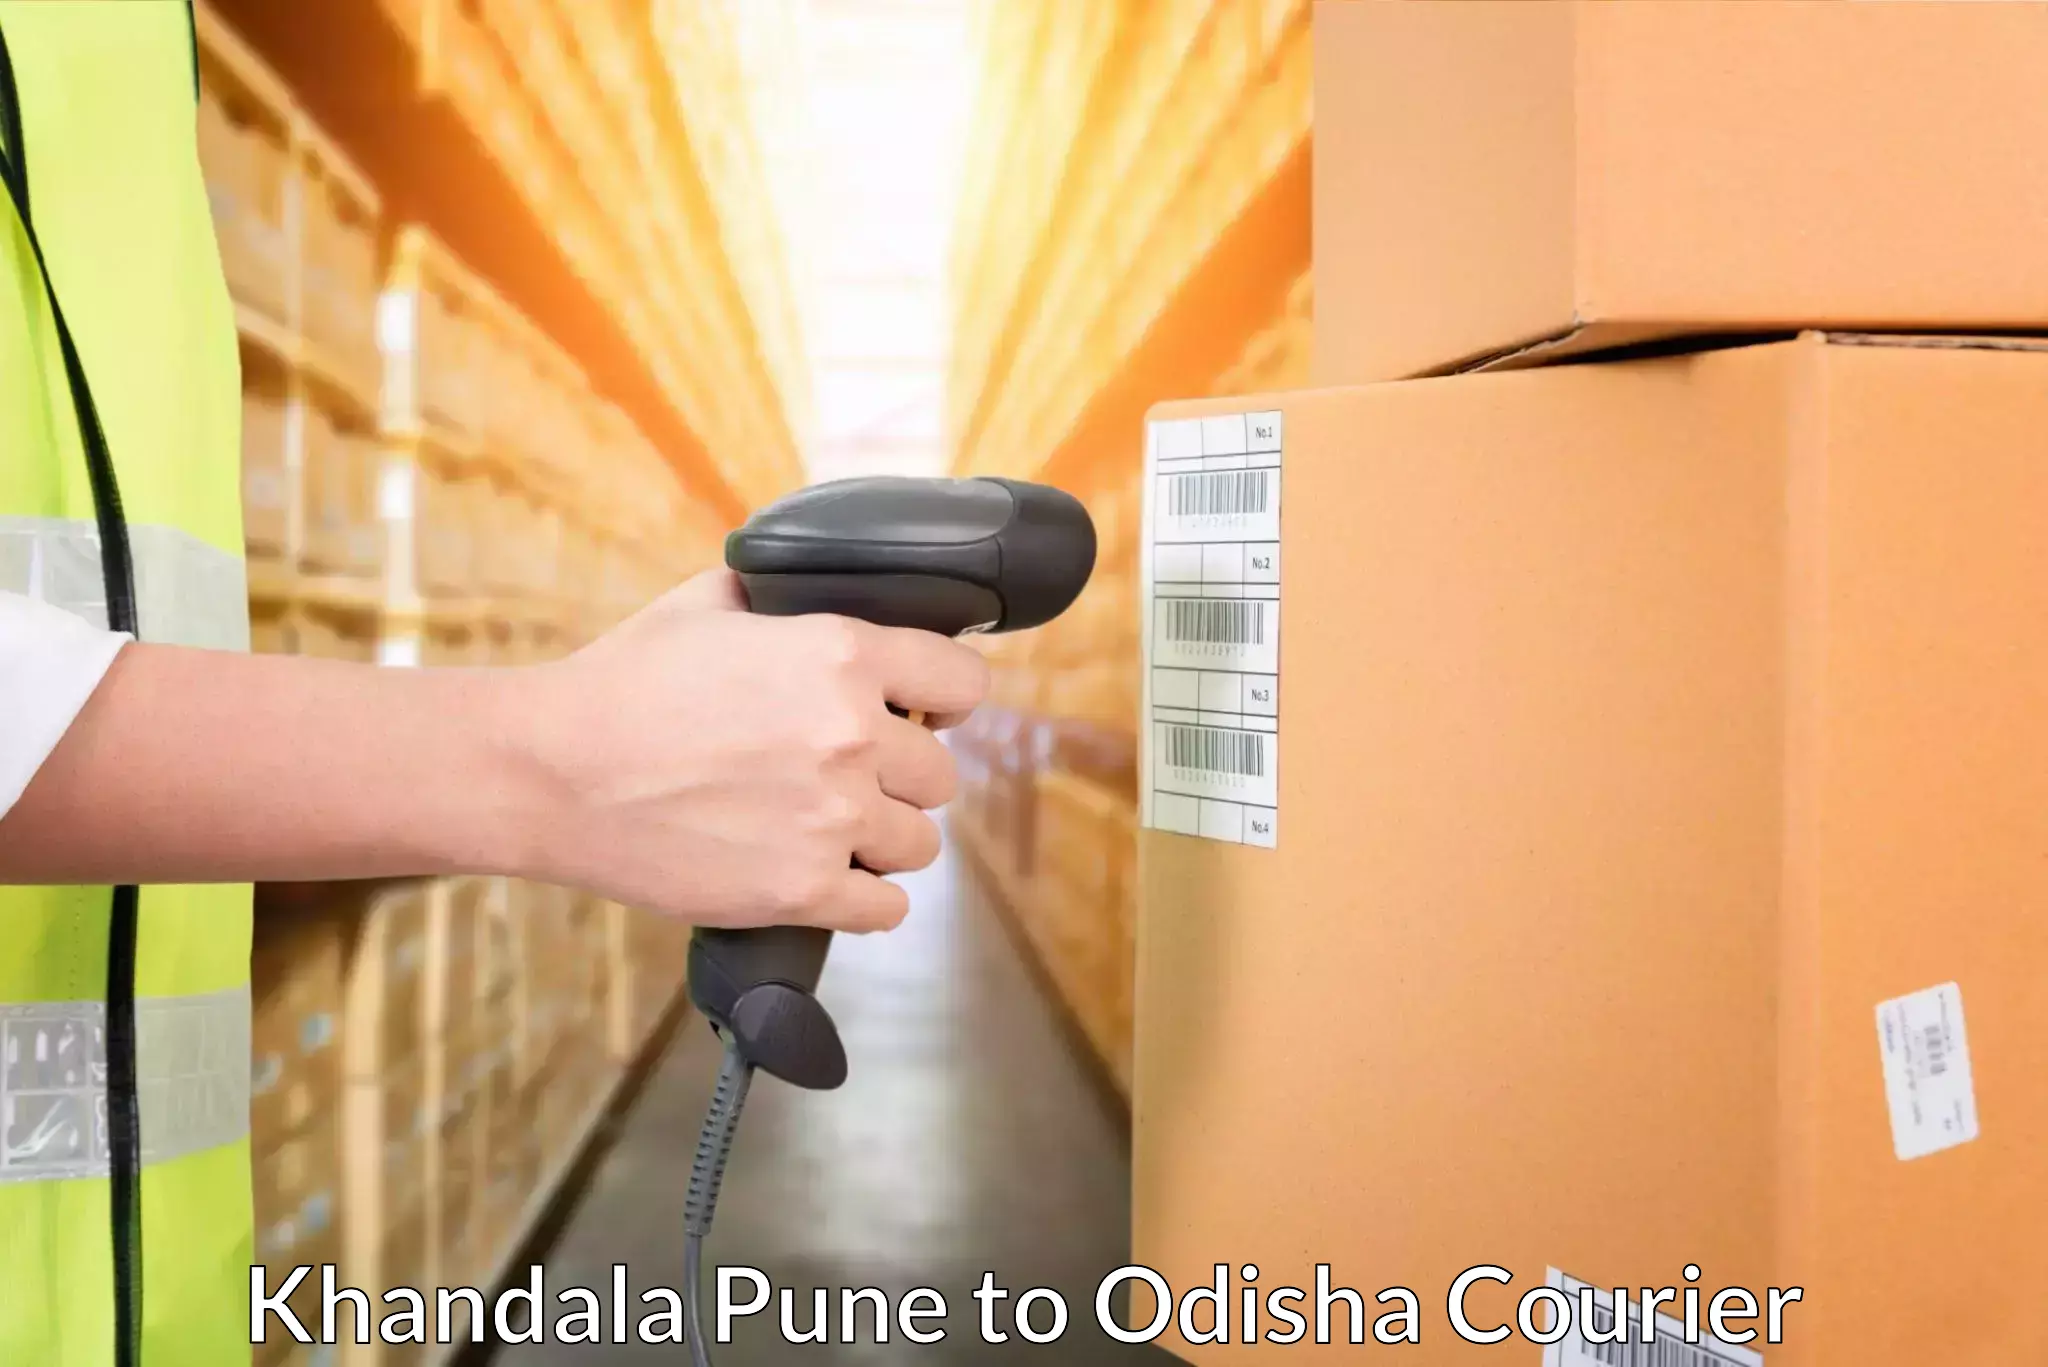 Next-generation courier services Khandala Pune to Odisha